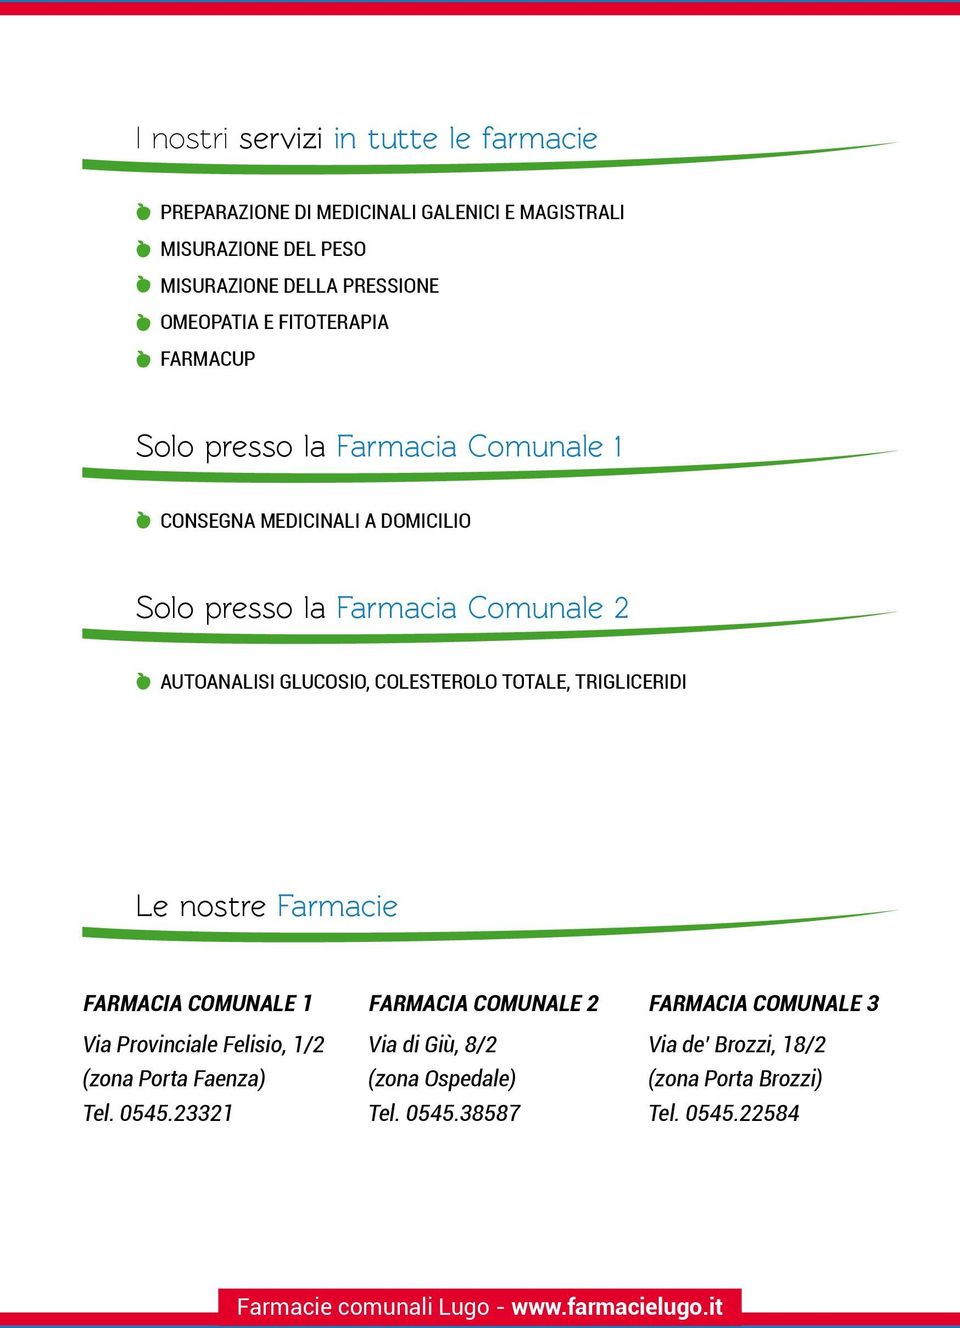 colesterolo totale, trigliceridi Le nostre Farmacie Farmacia comunale 1 Via Provinciale Felisio, 1/2 (zona Porta Faenza) Tel. 0545.